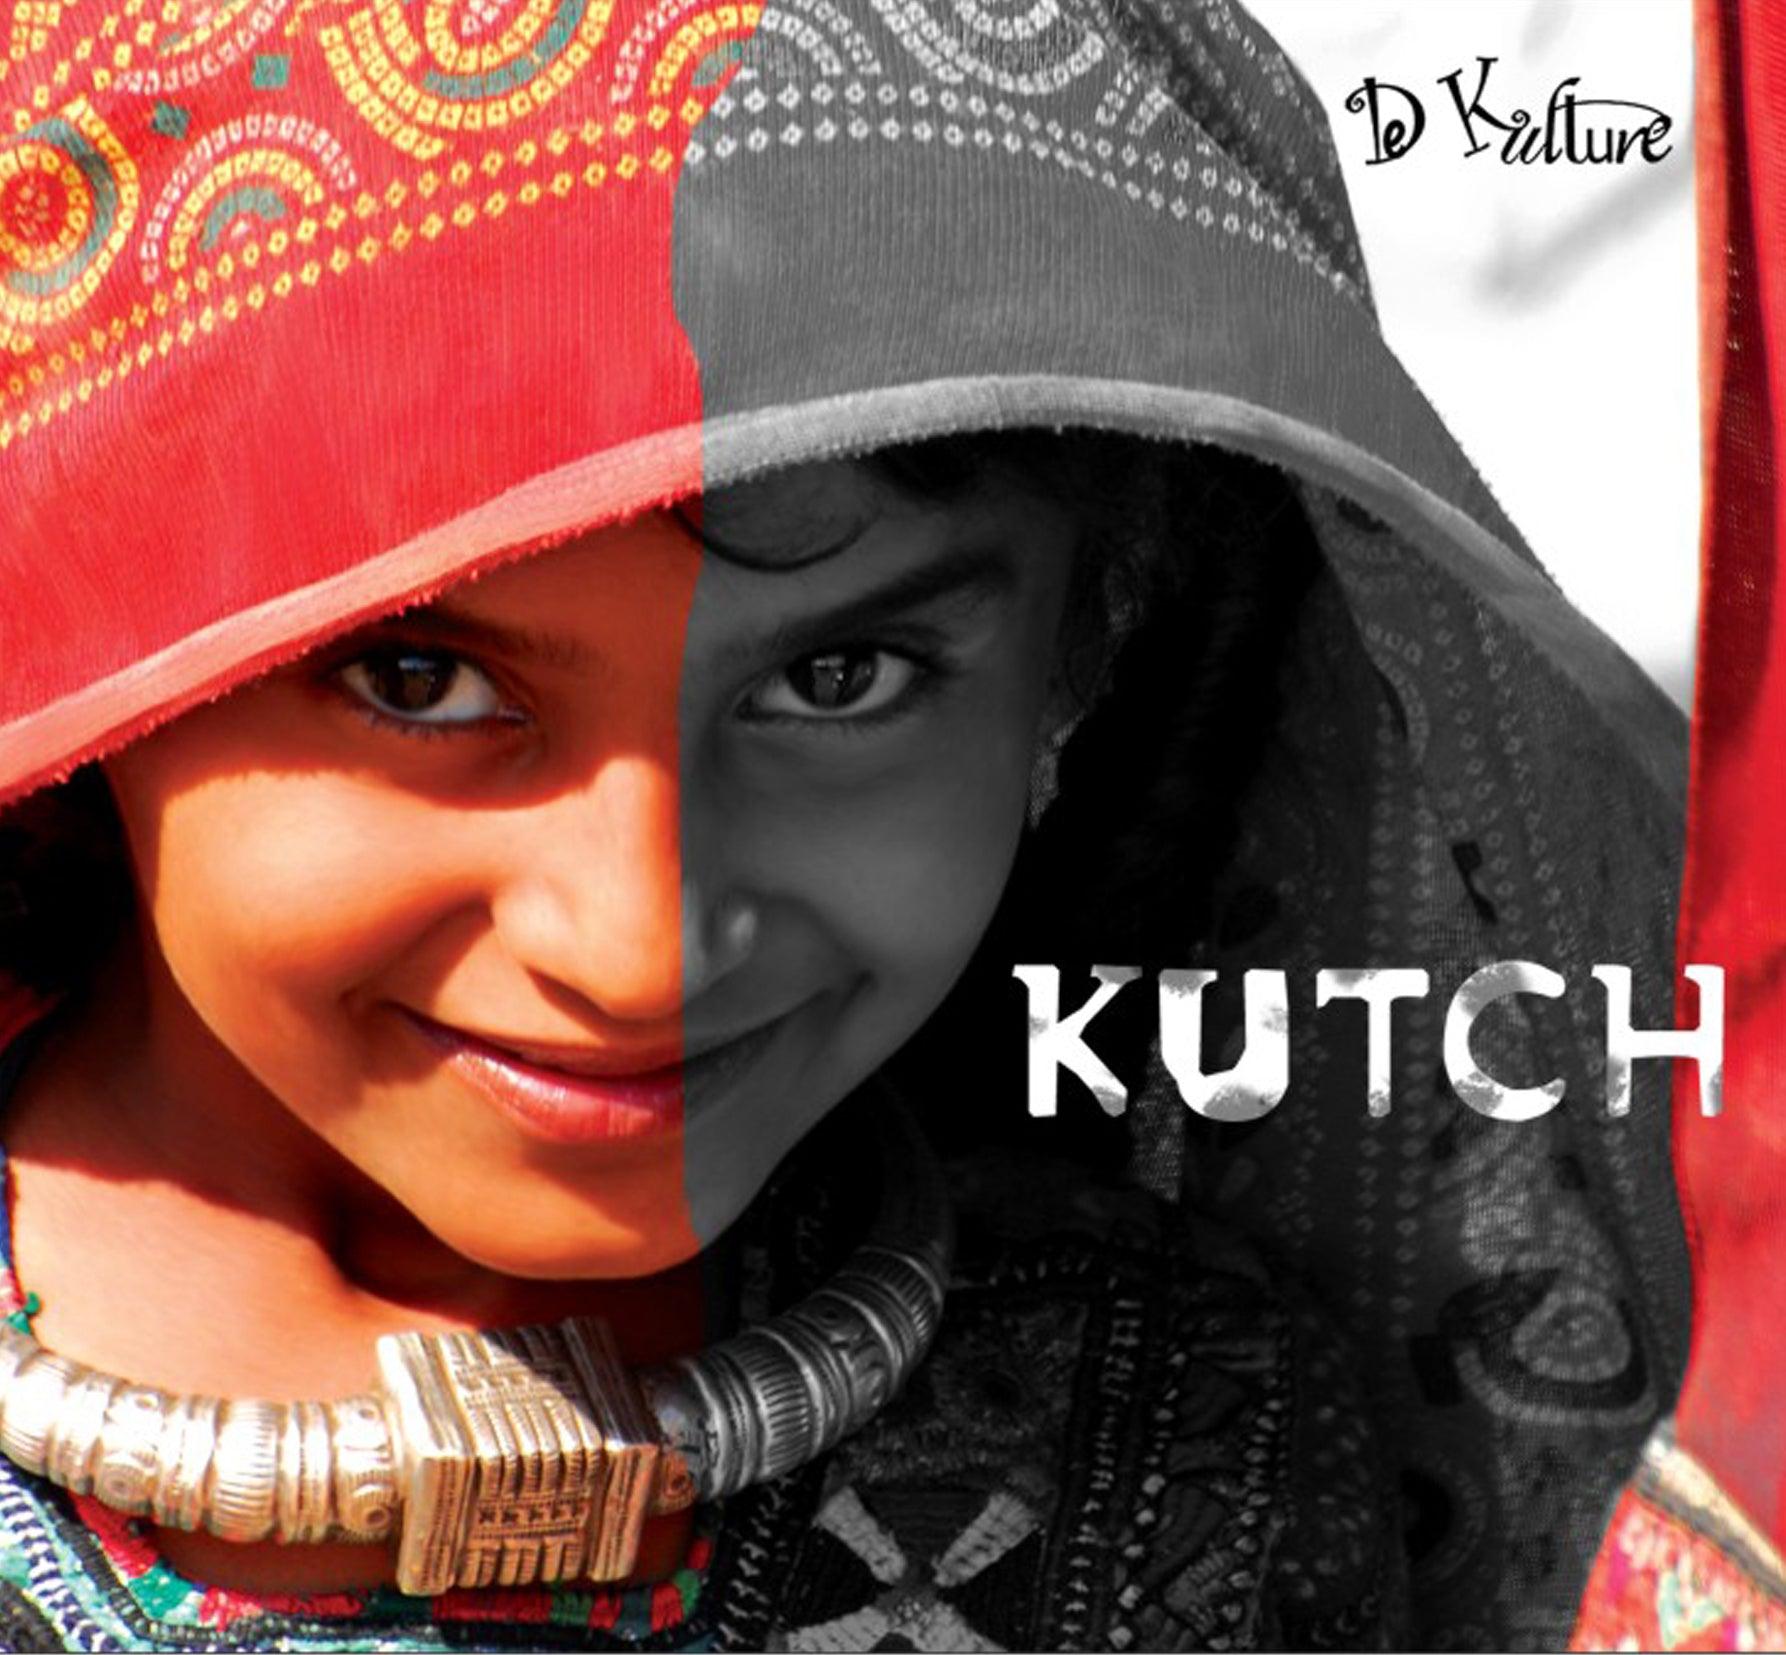 Kutch Gujarati Folk Songs CD - DeKulture DKM-004-A